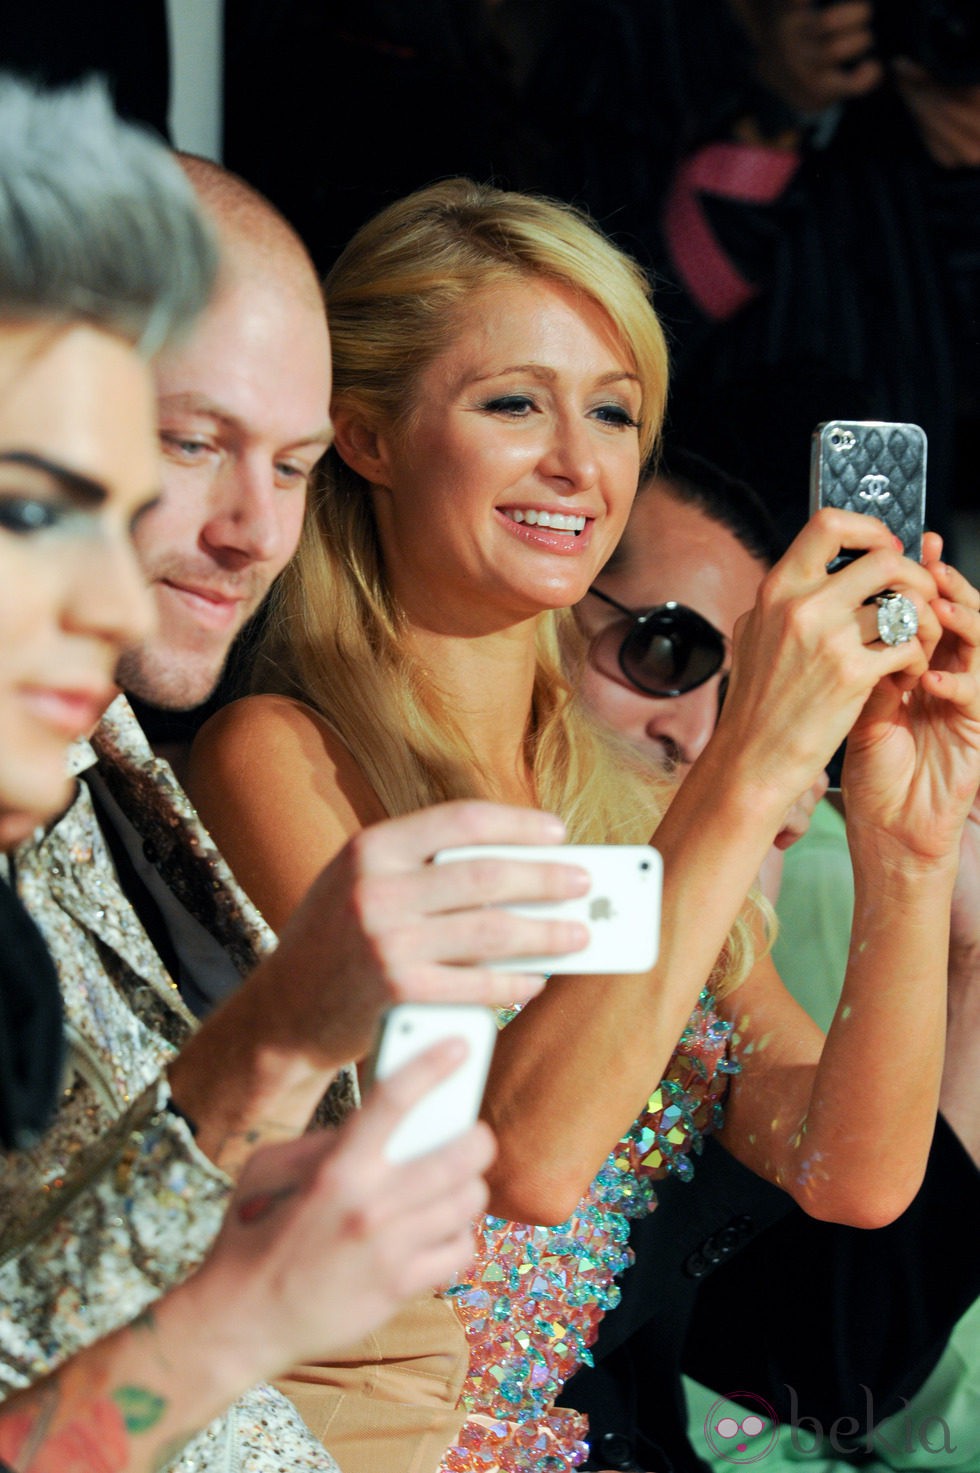 Paris Hilton, en el front row con su iPhone